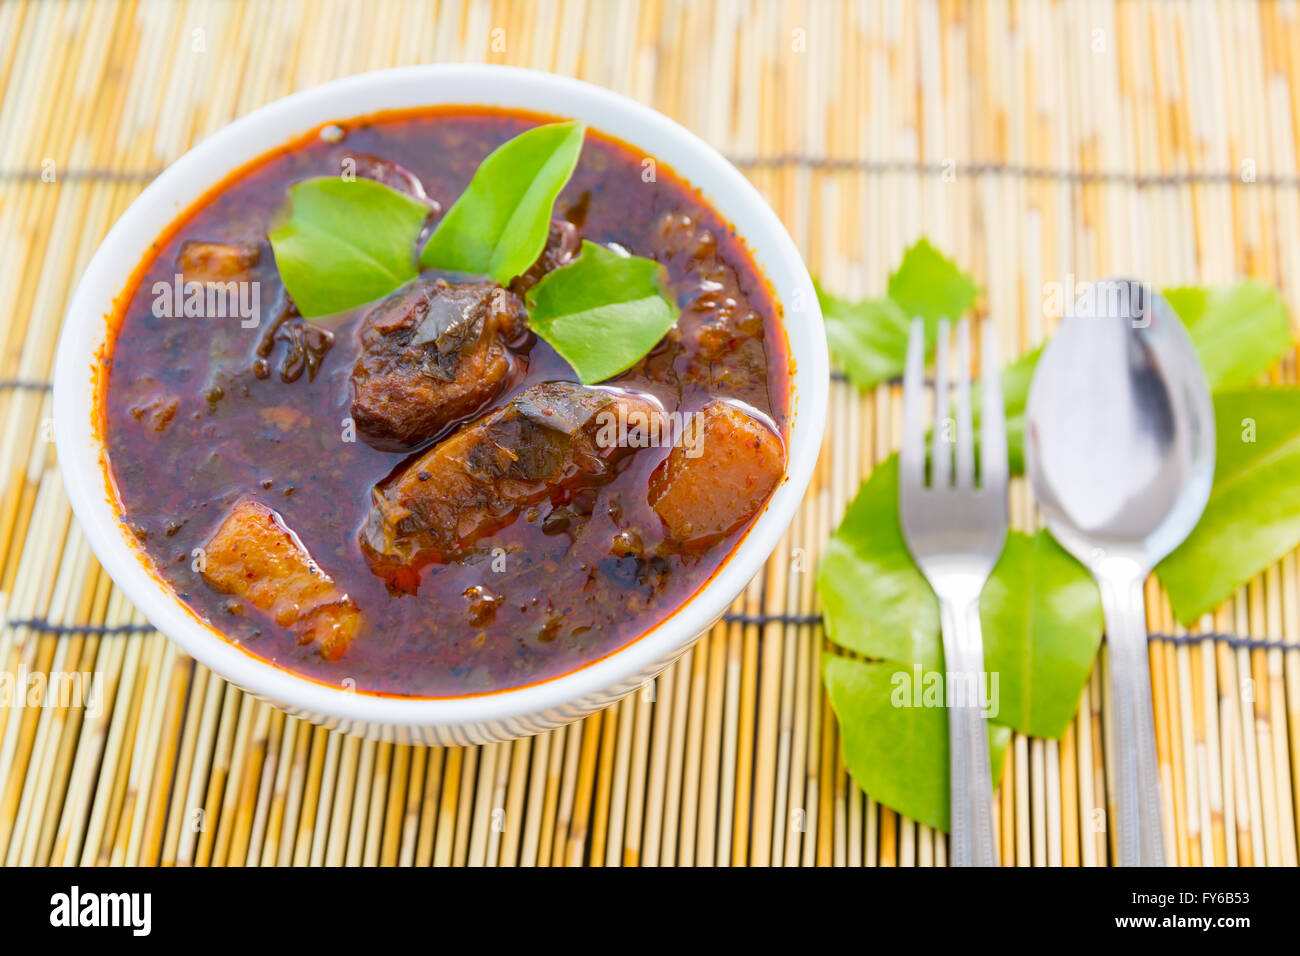 La cuisine thaï curry de porc Chamuang sur bambou Banque D'Images